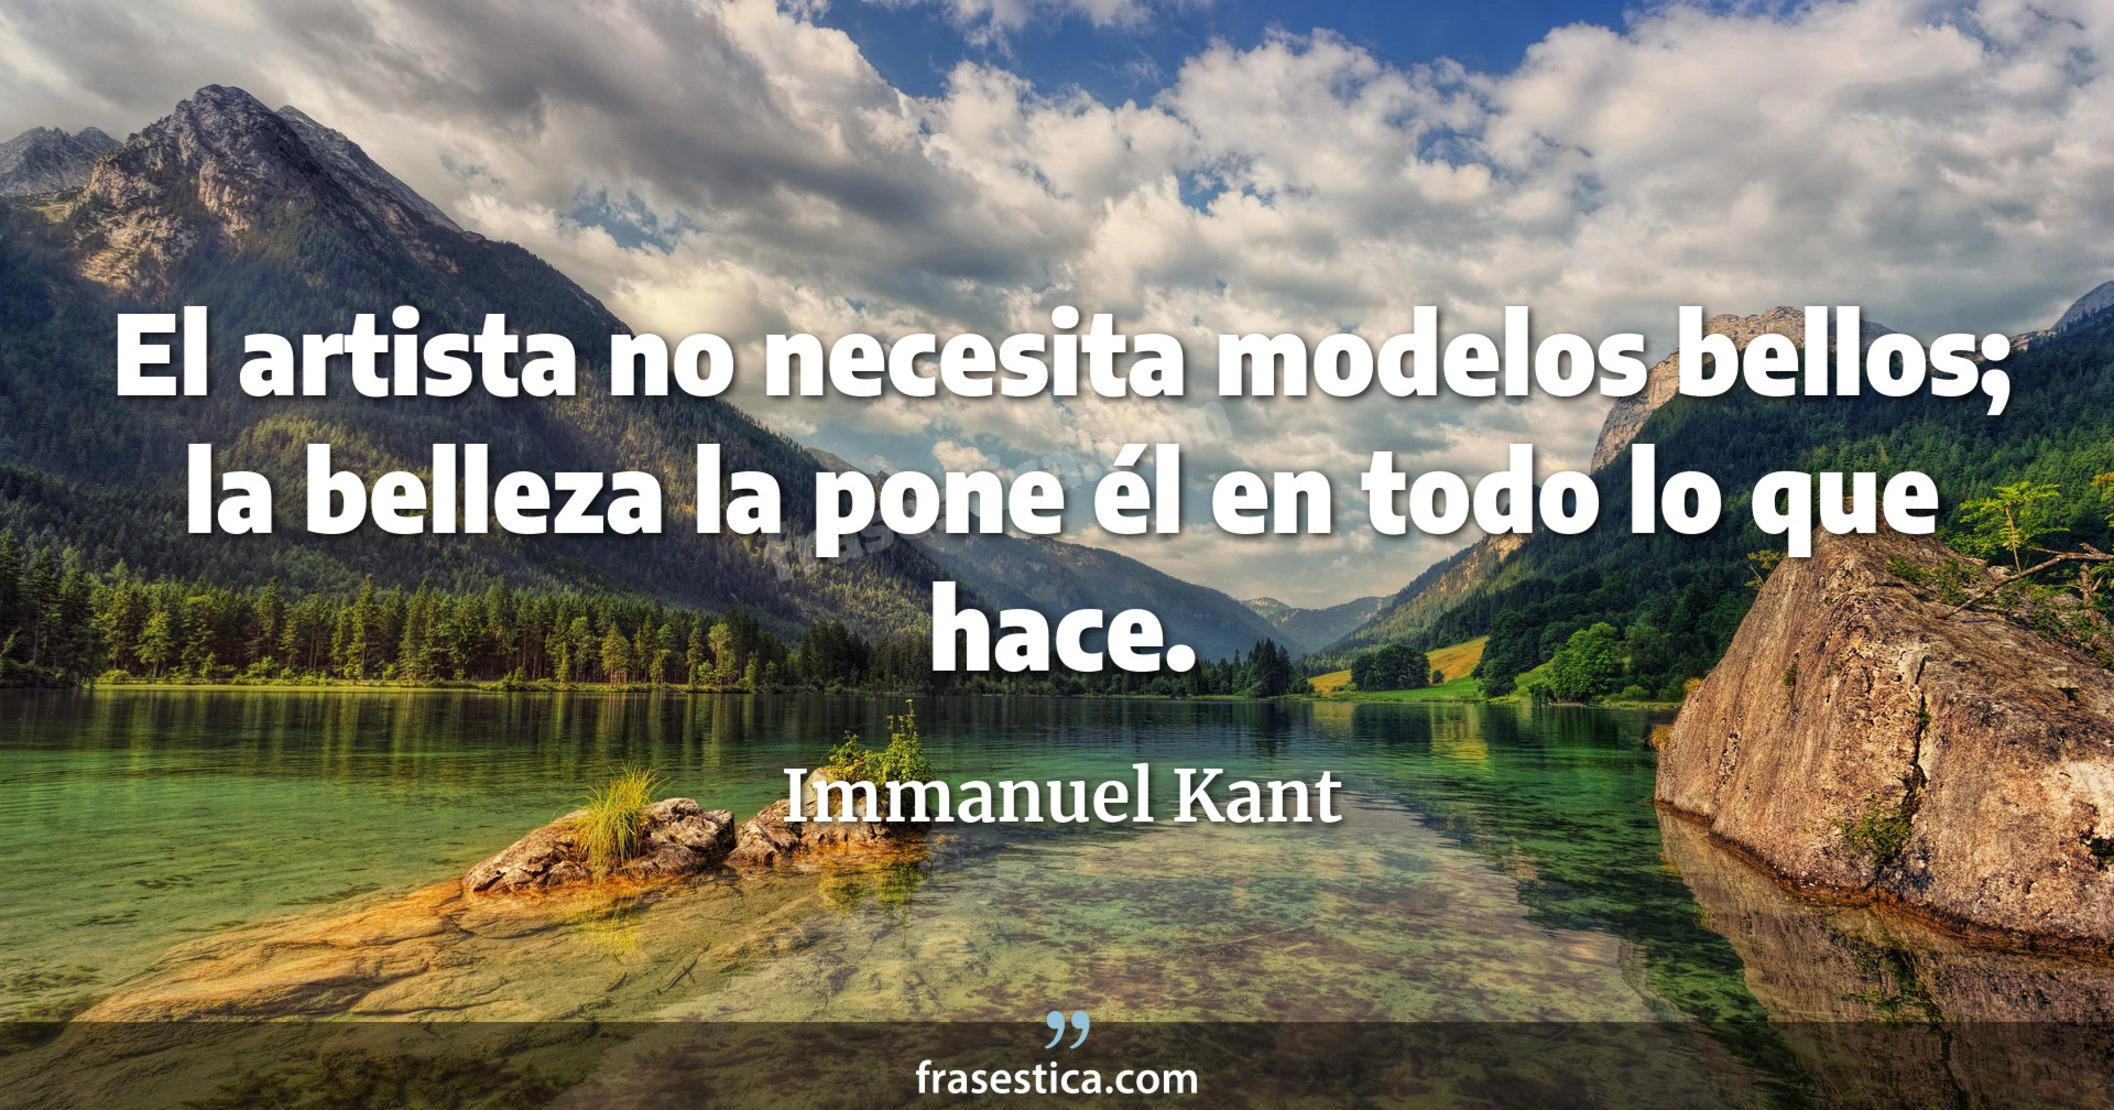 El artista no necesita modelos bellos; la belleza la pone él en todo lo que hace. - Immanuel Kant